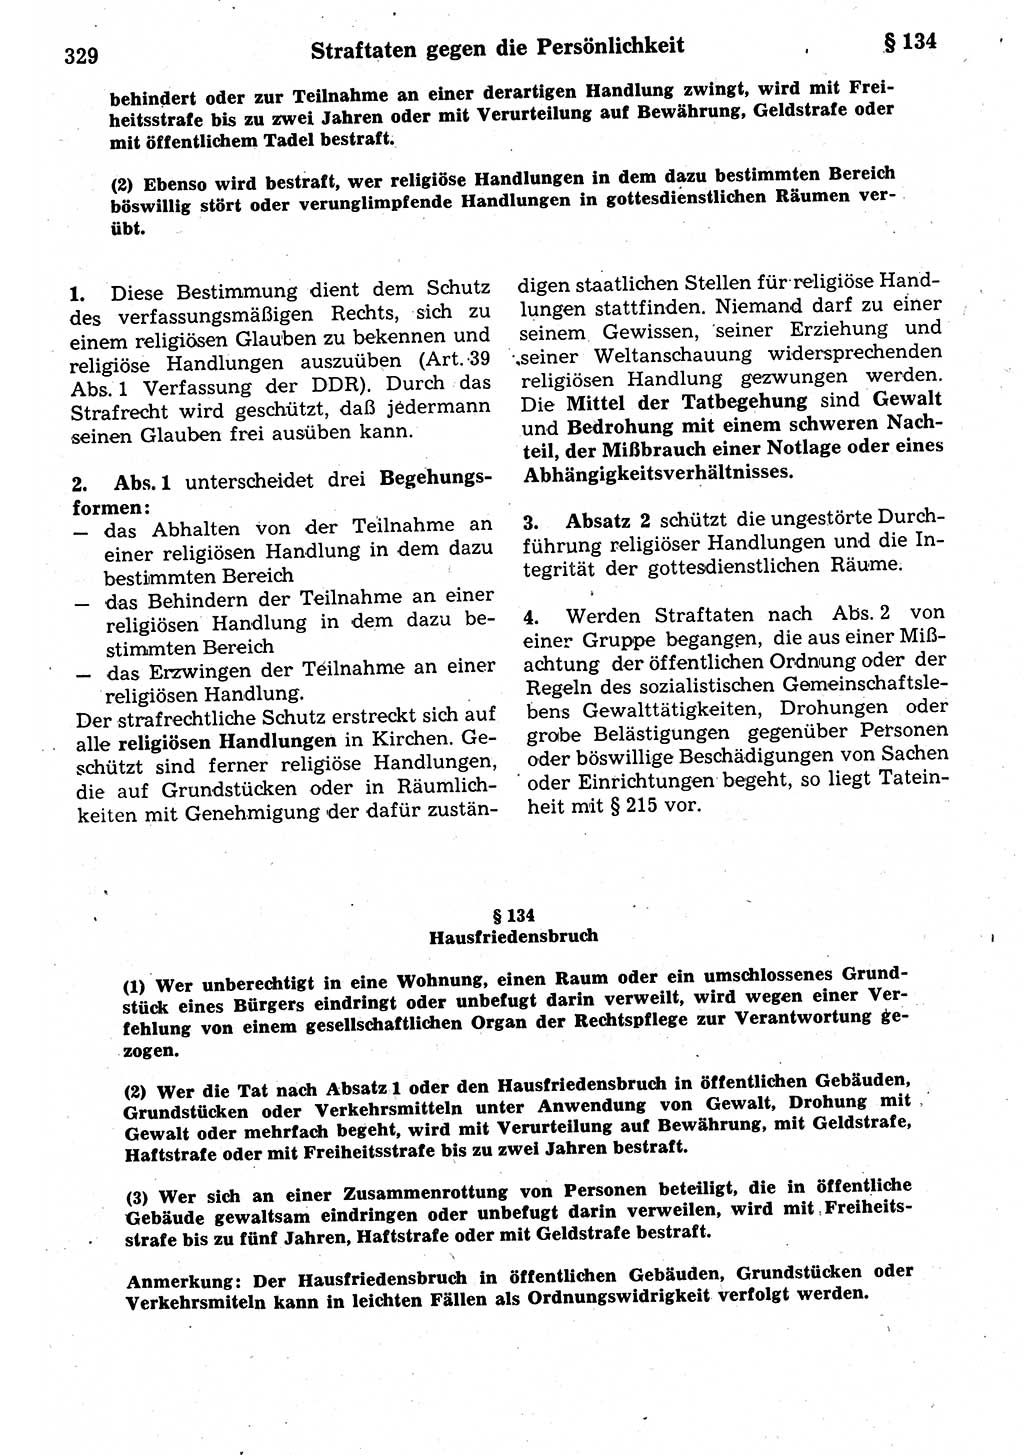 Strafrecht der Deutschen Demokratischen Republik (DDR), Kommentar zum Strafgesetzbuch (StGB) 1987, Seite 329 (Strafr. DDR Komm. StGB 1987, S. 329)